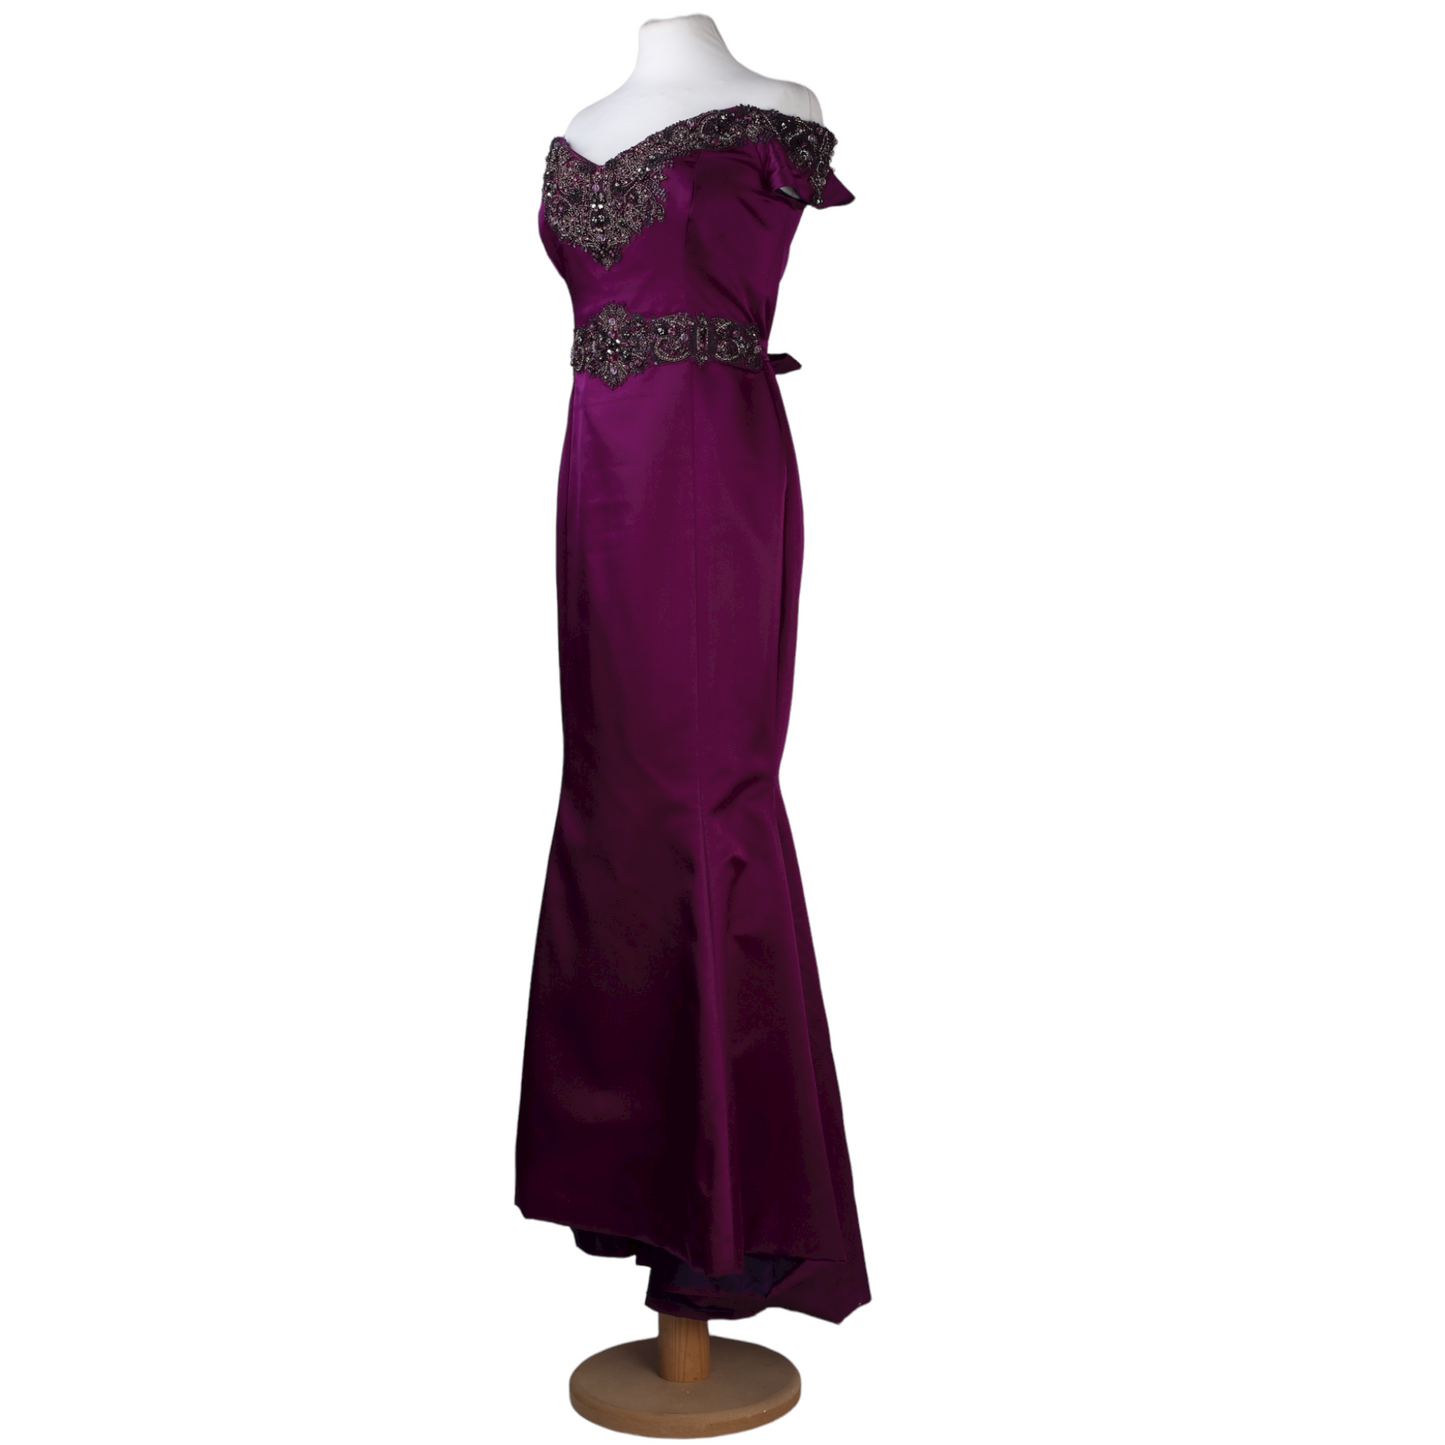 فستان ماكسي طويل بأكتاف عارية مع تطريز باللون الأرجواني من متجر بادجلي ميشكا